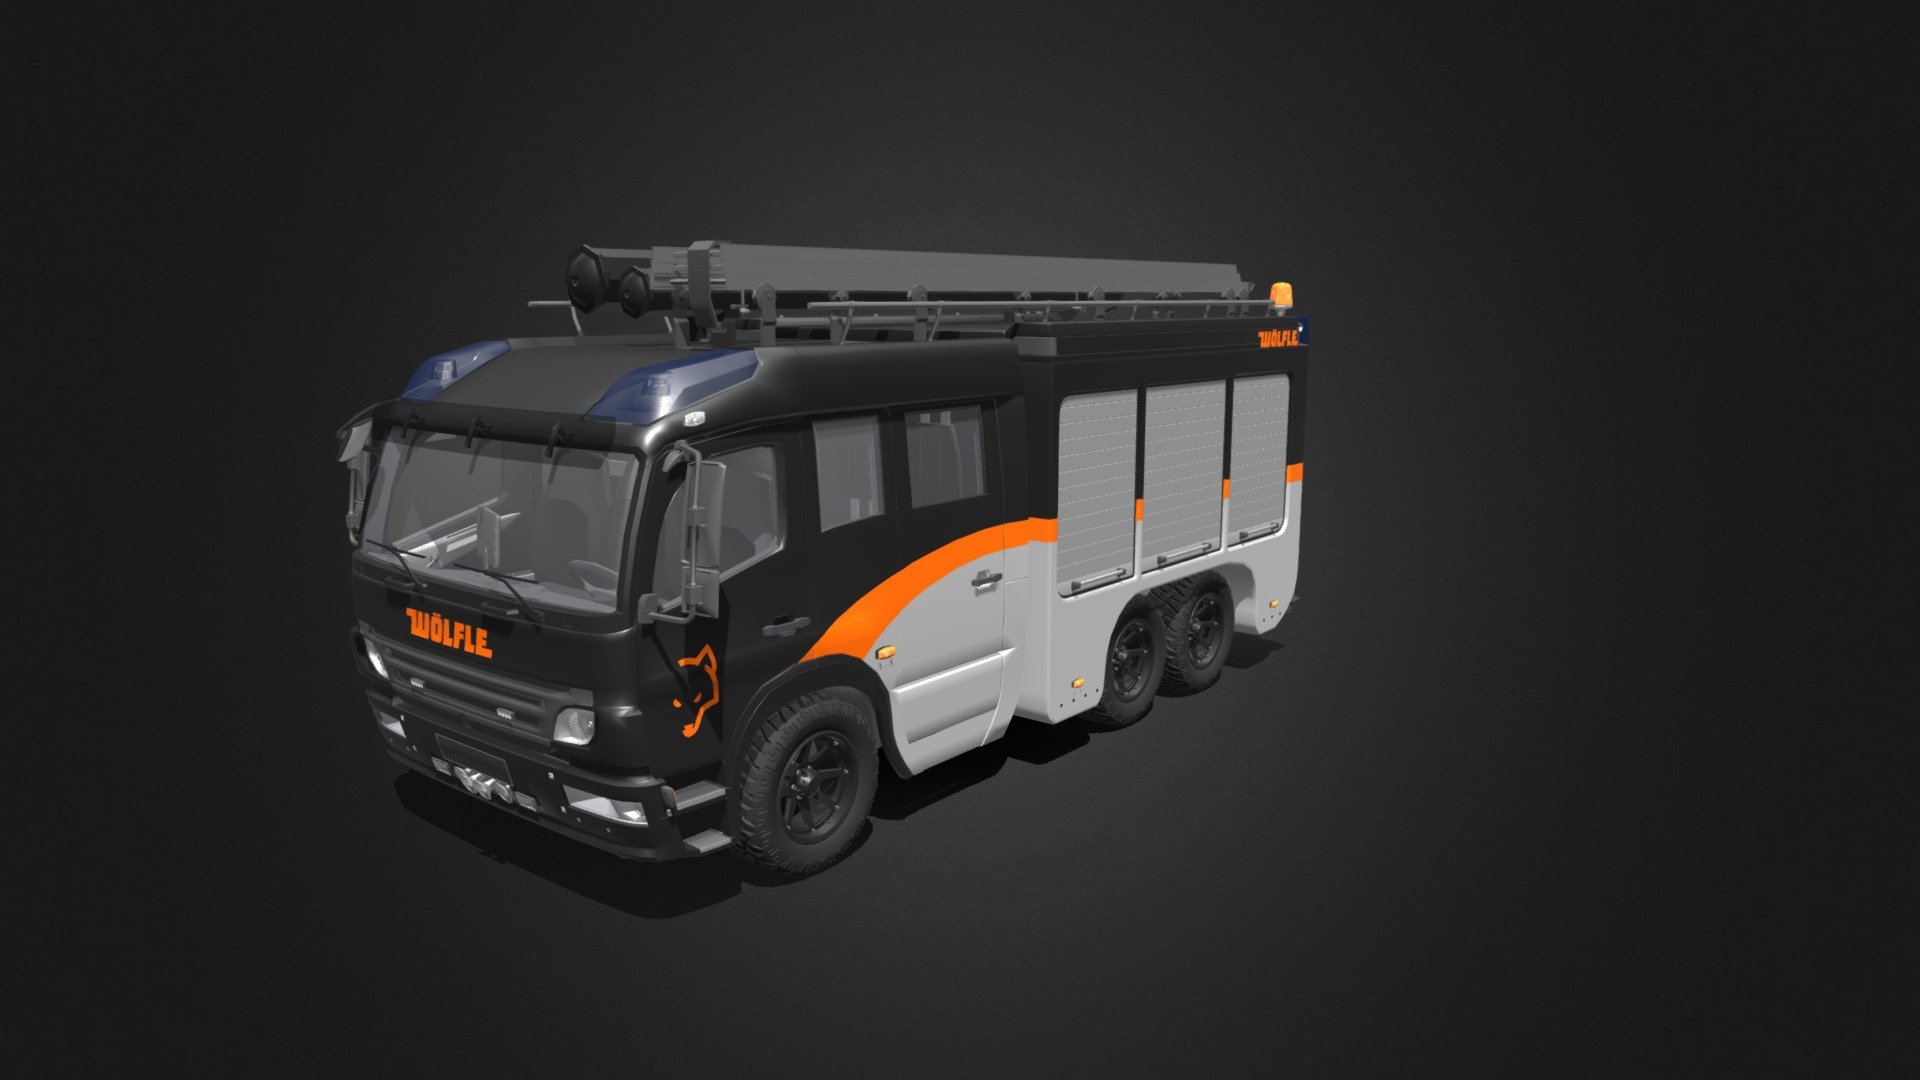 Woelfle Fire Truck - 3D model by dec3 3d model